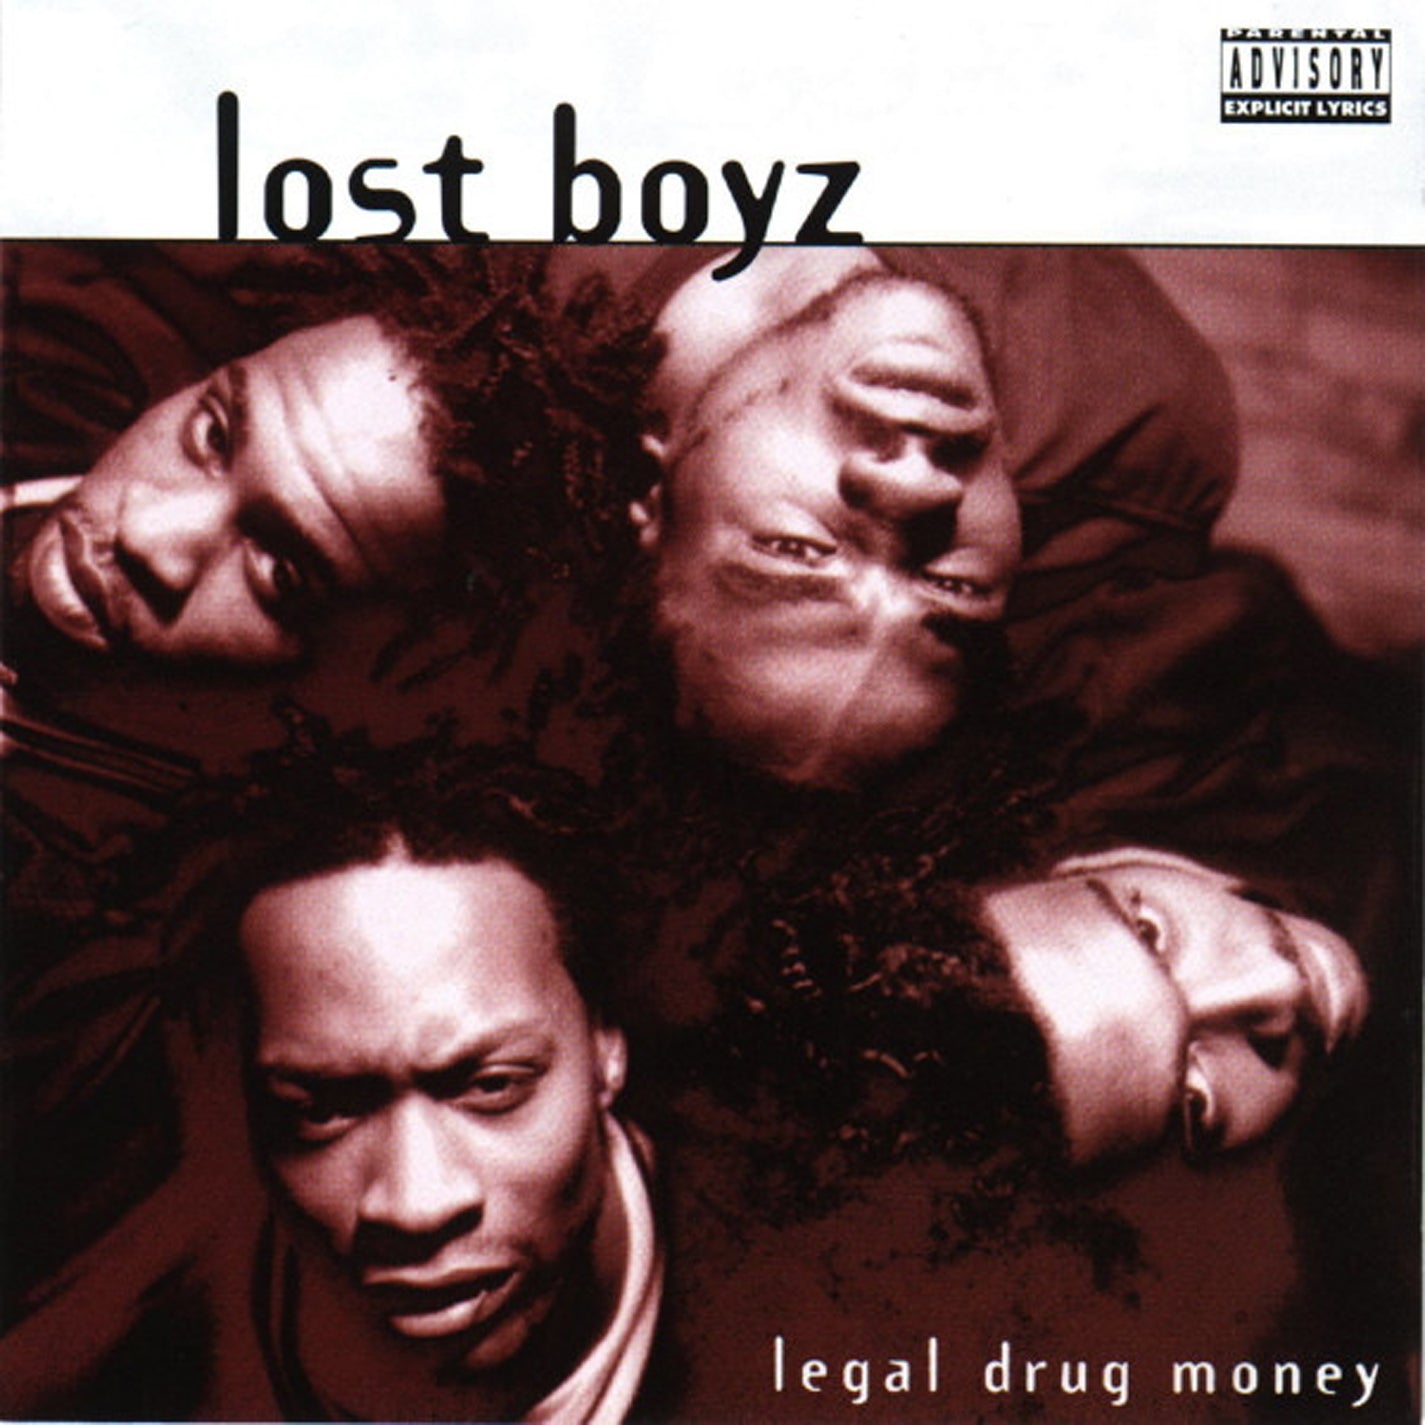 THE LOST BOYZ - LEGAL DRUG MONEY (CD LP) c1996